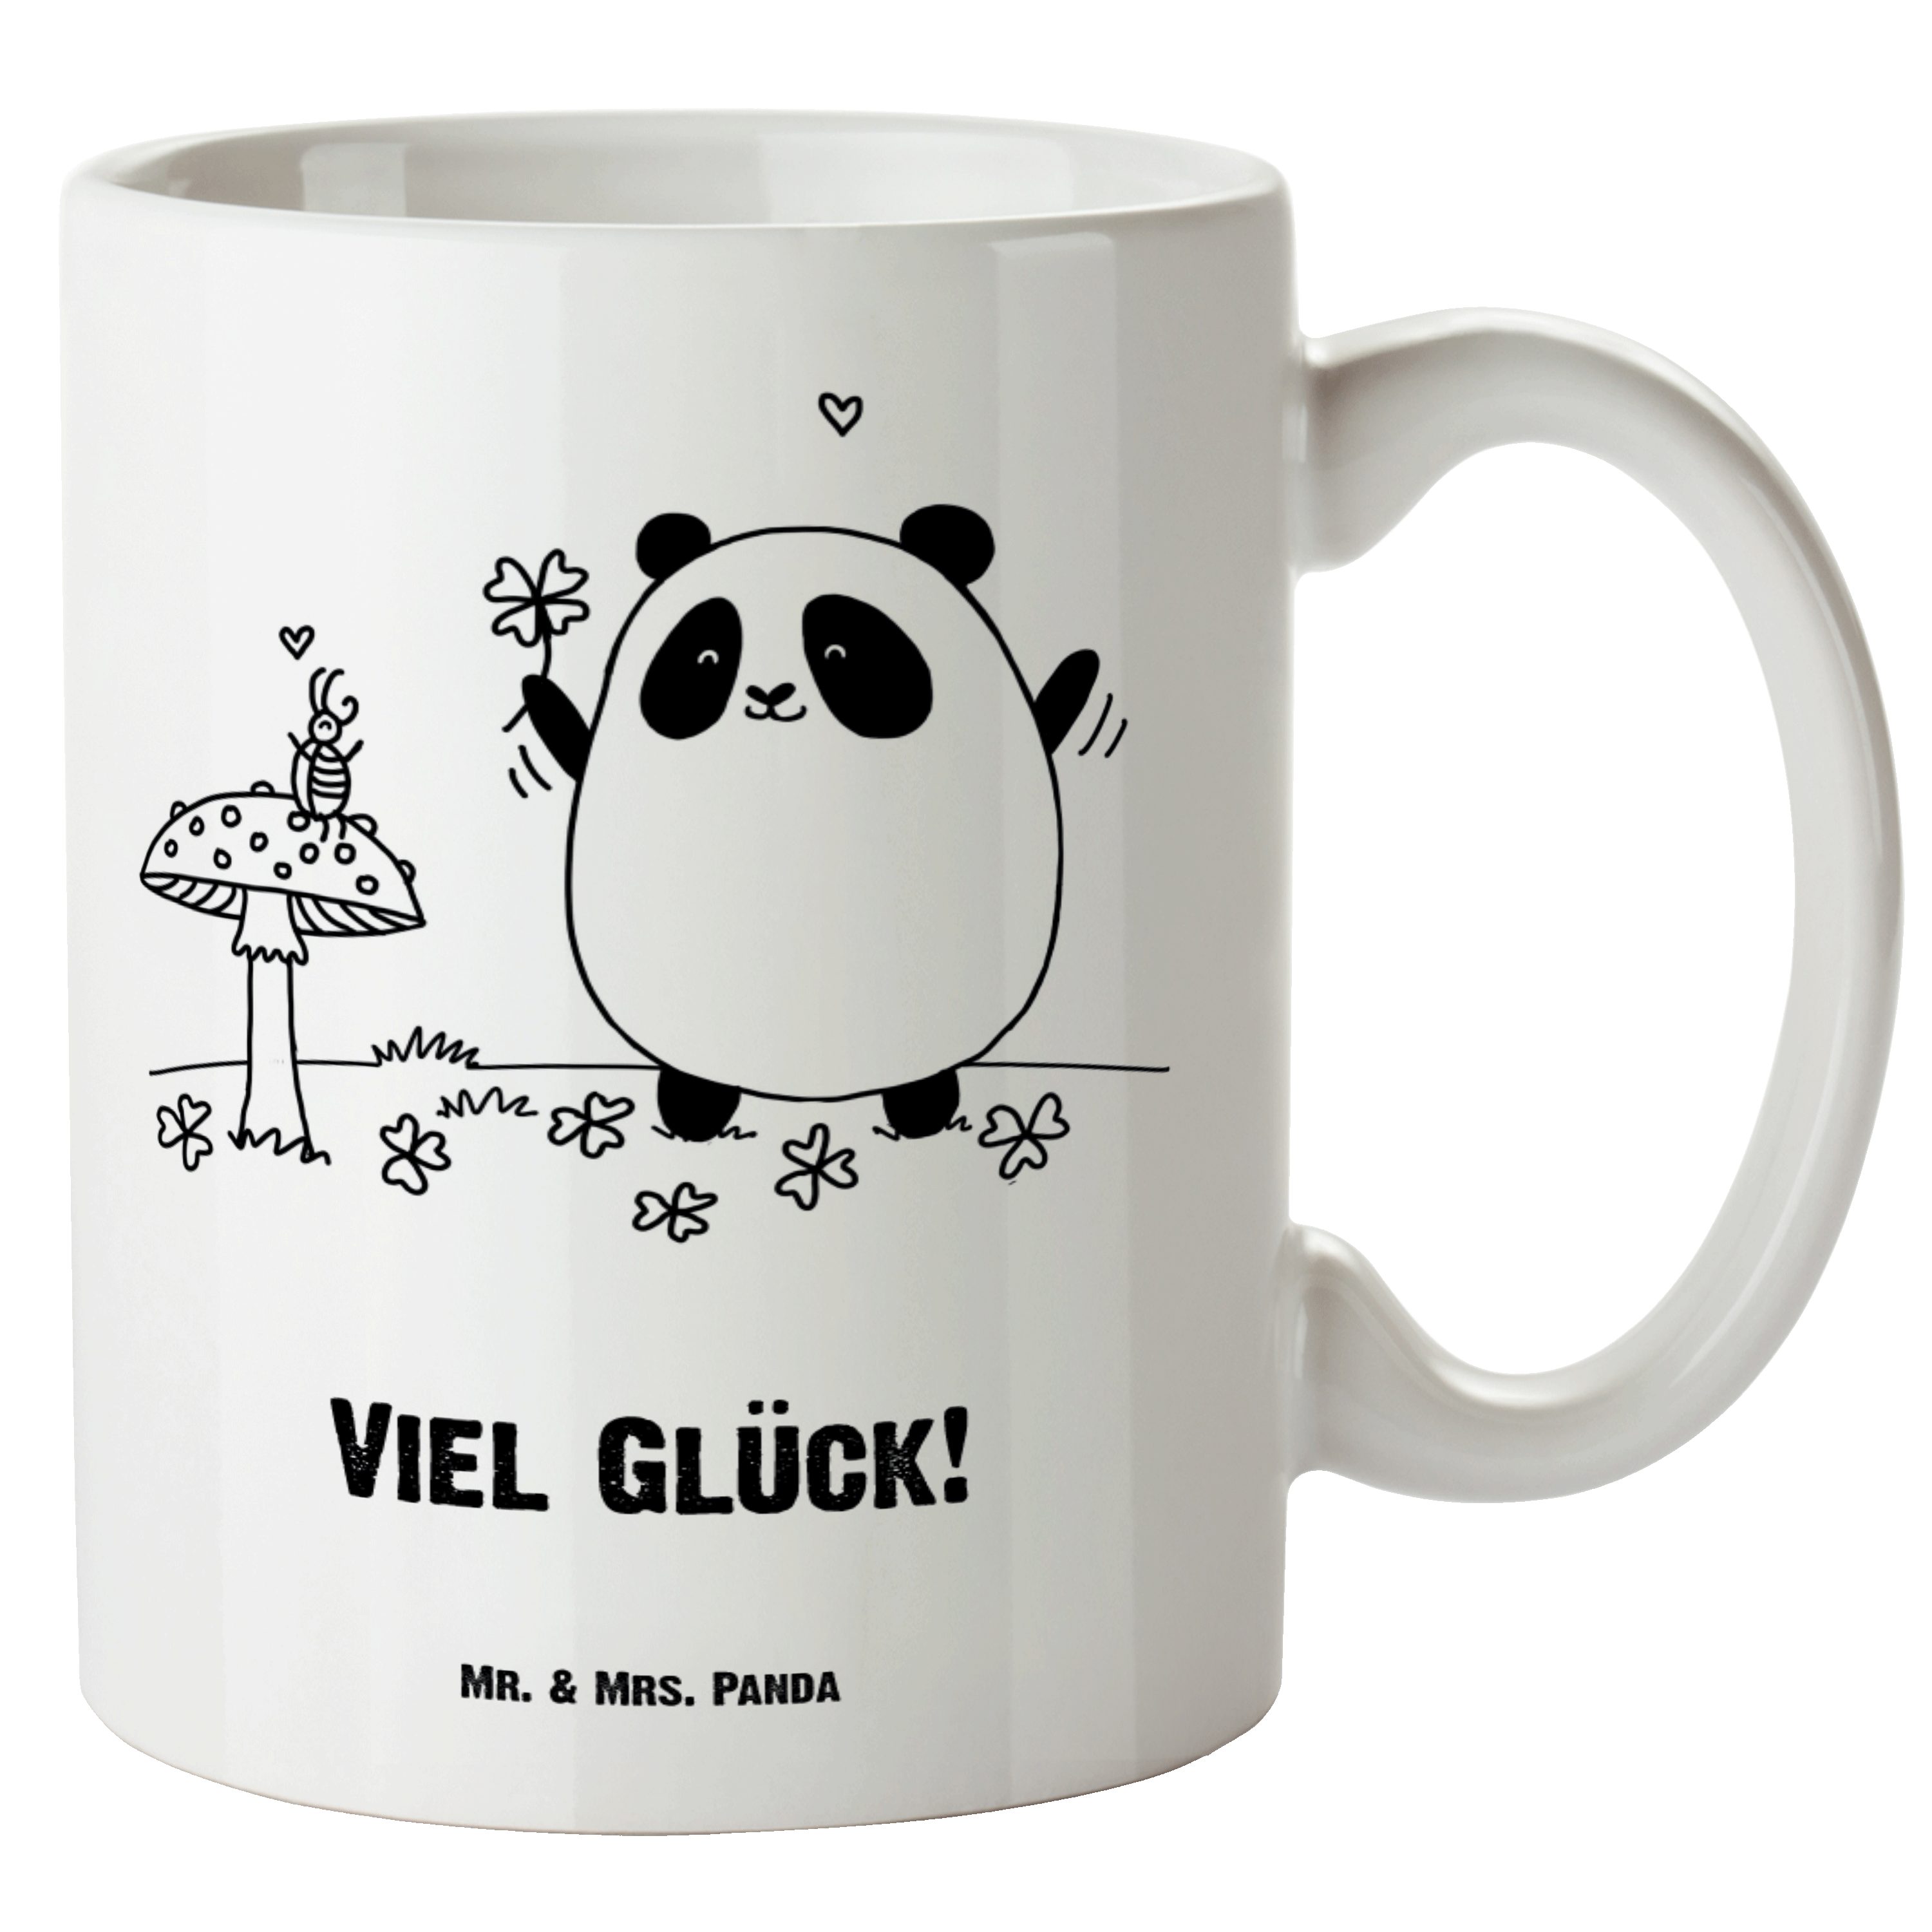 Mr. & Mrs. Panda Tasse Easy & Peasy Viel Glück - Weiß - Geschenk, Große Tasse, XL Tasse, XL, XL Tasse Keramik